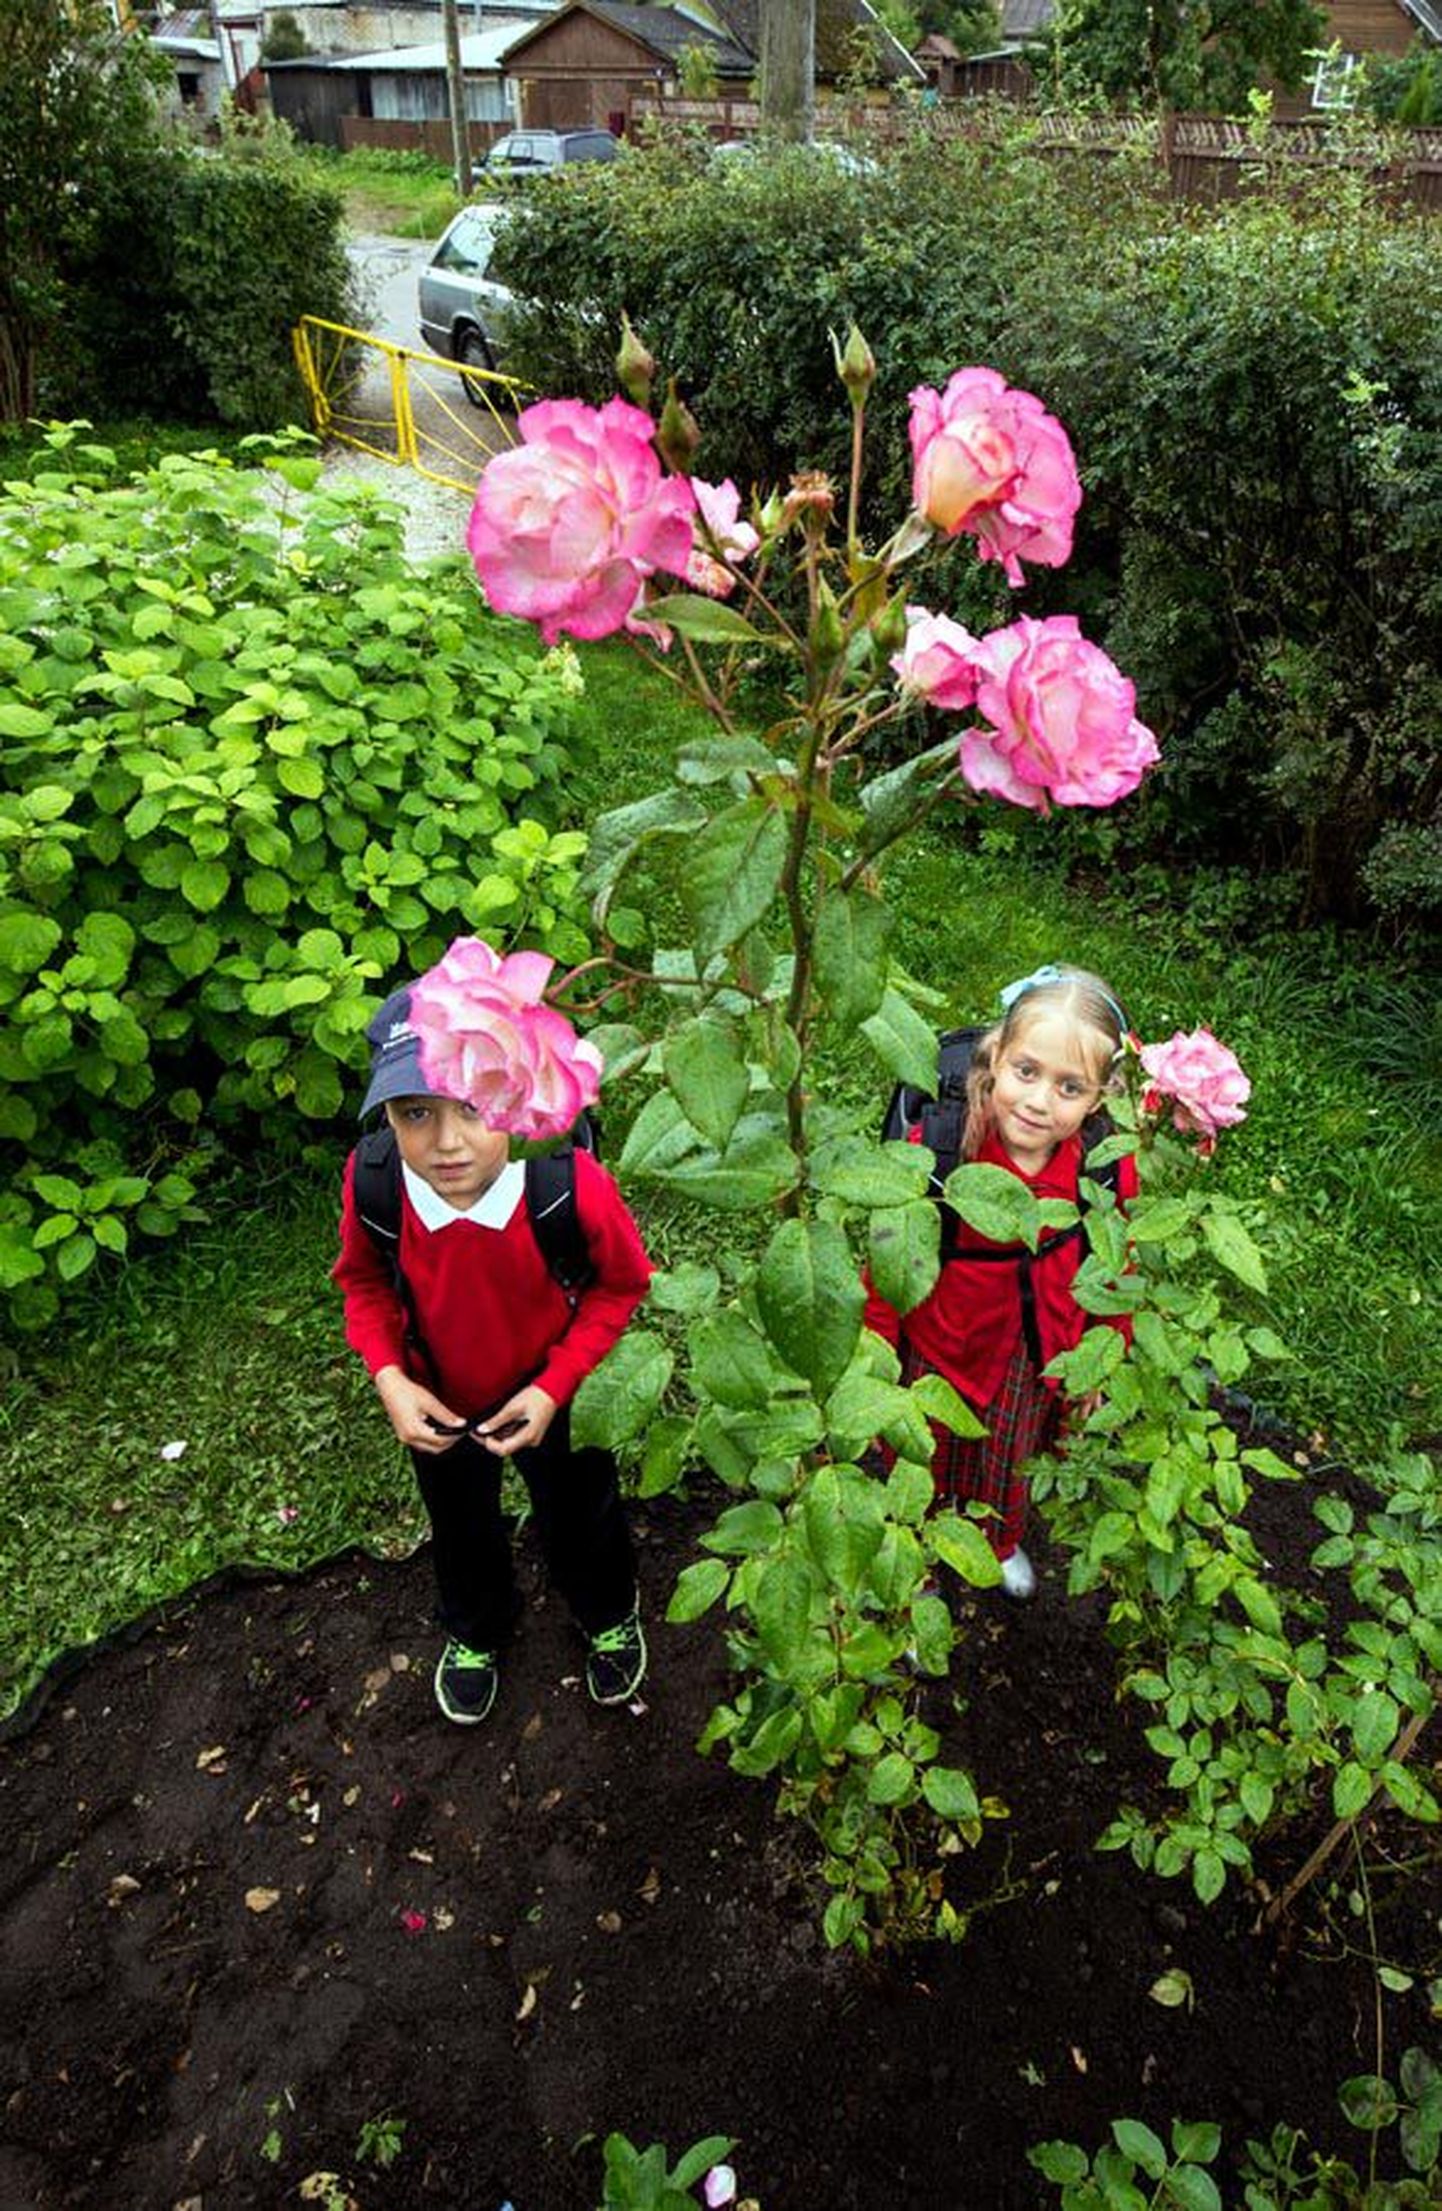 Koduaia kõrget roosi vaatavad Oliver ja Triin Riisenberg. Ema ja isa olid kinkinud selle lille mitu aastat tagasi Oliverile sünnipäevaks. Kaksikõde Triin sai samal korral oma roosi, aga see pole nii pikaks visanud.